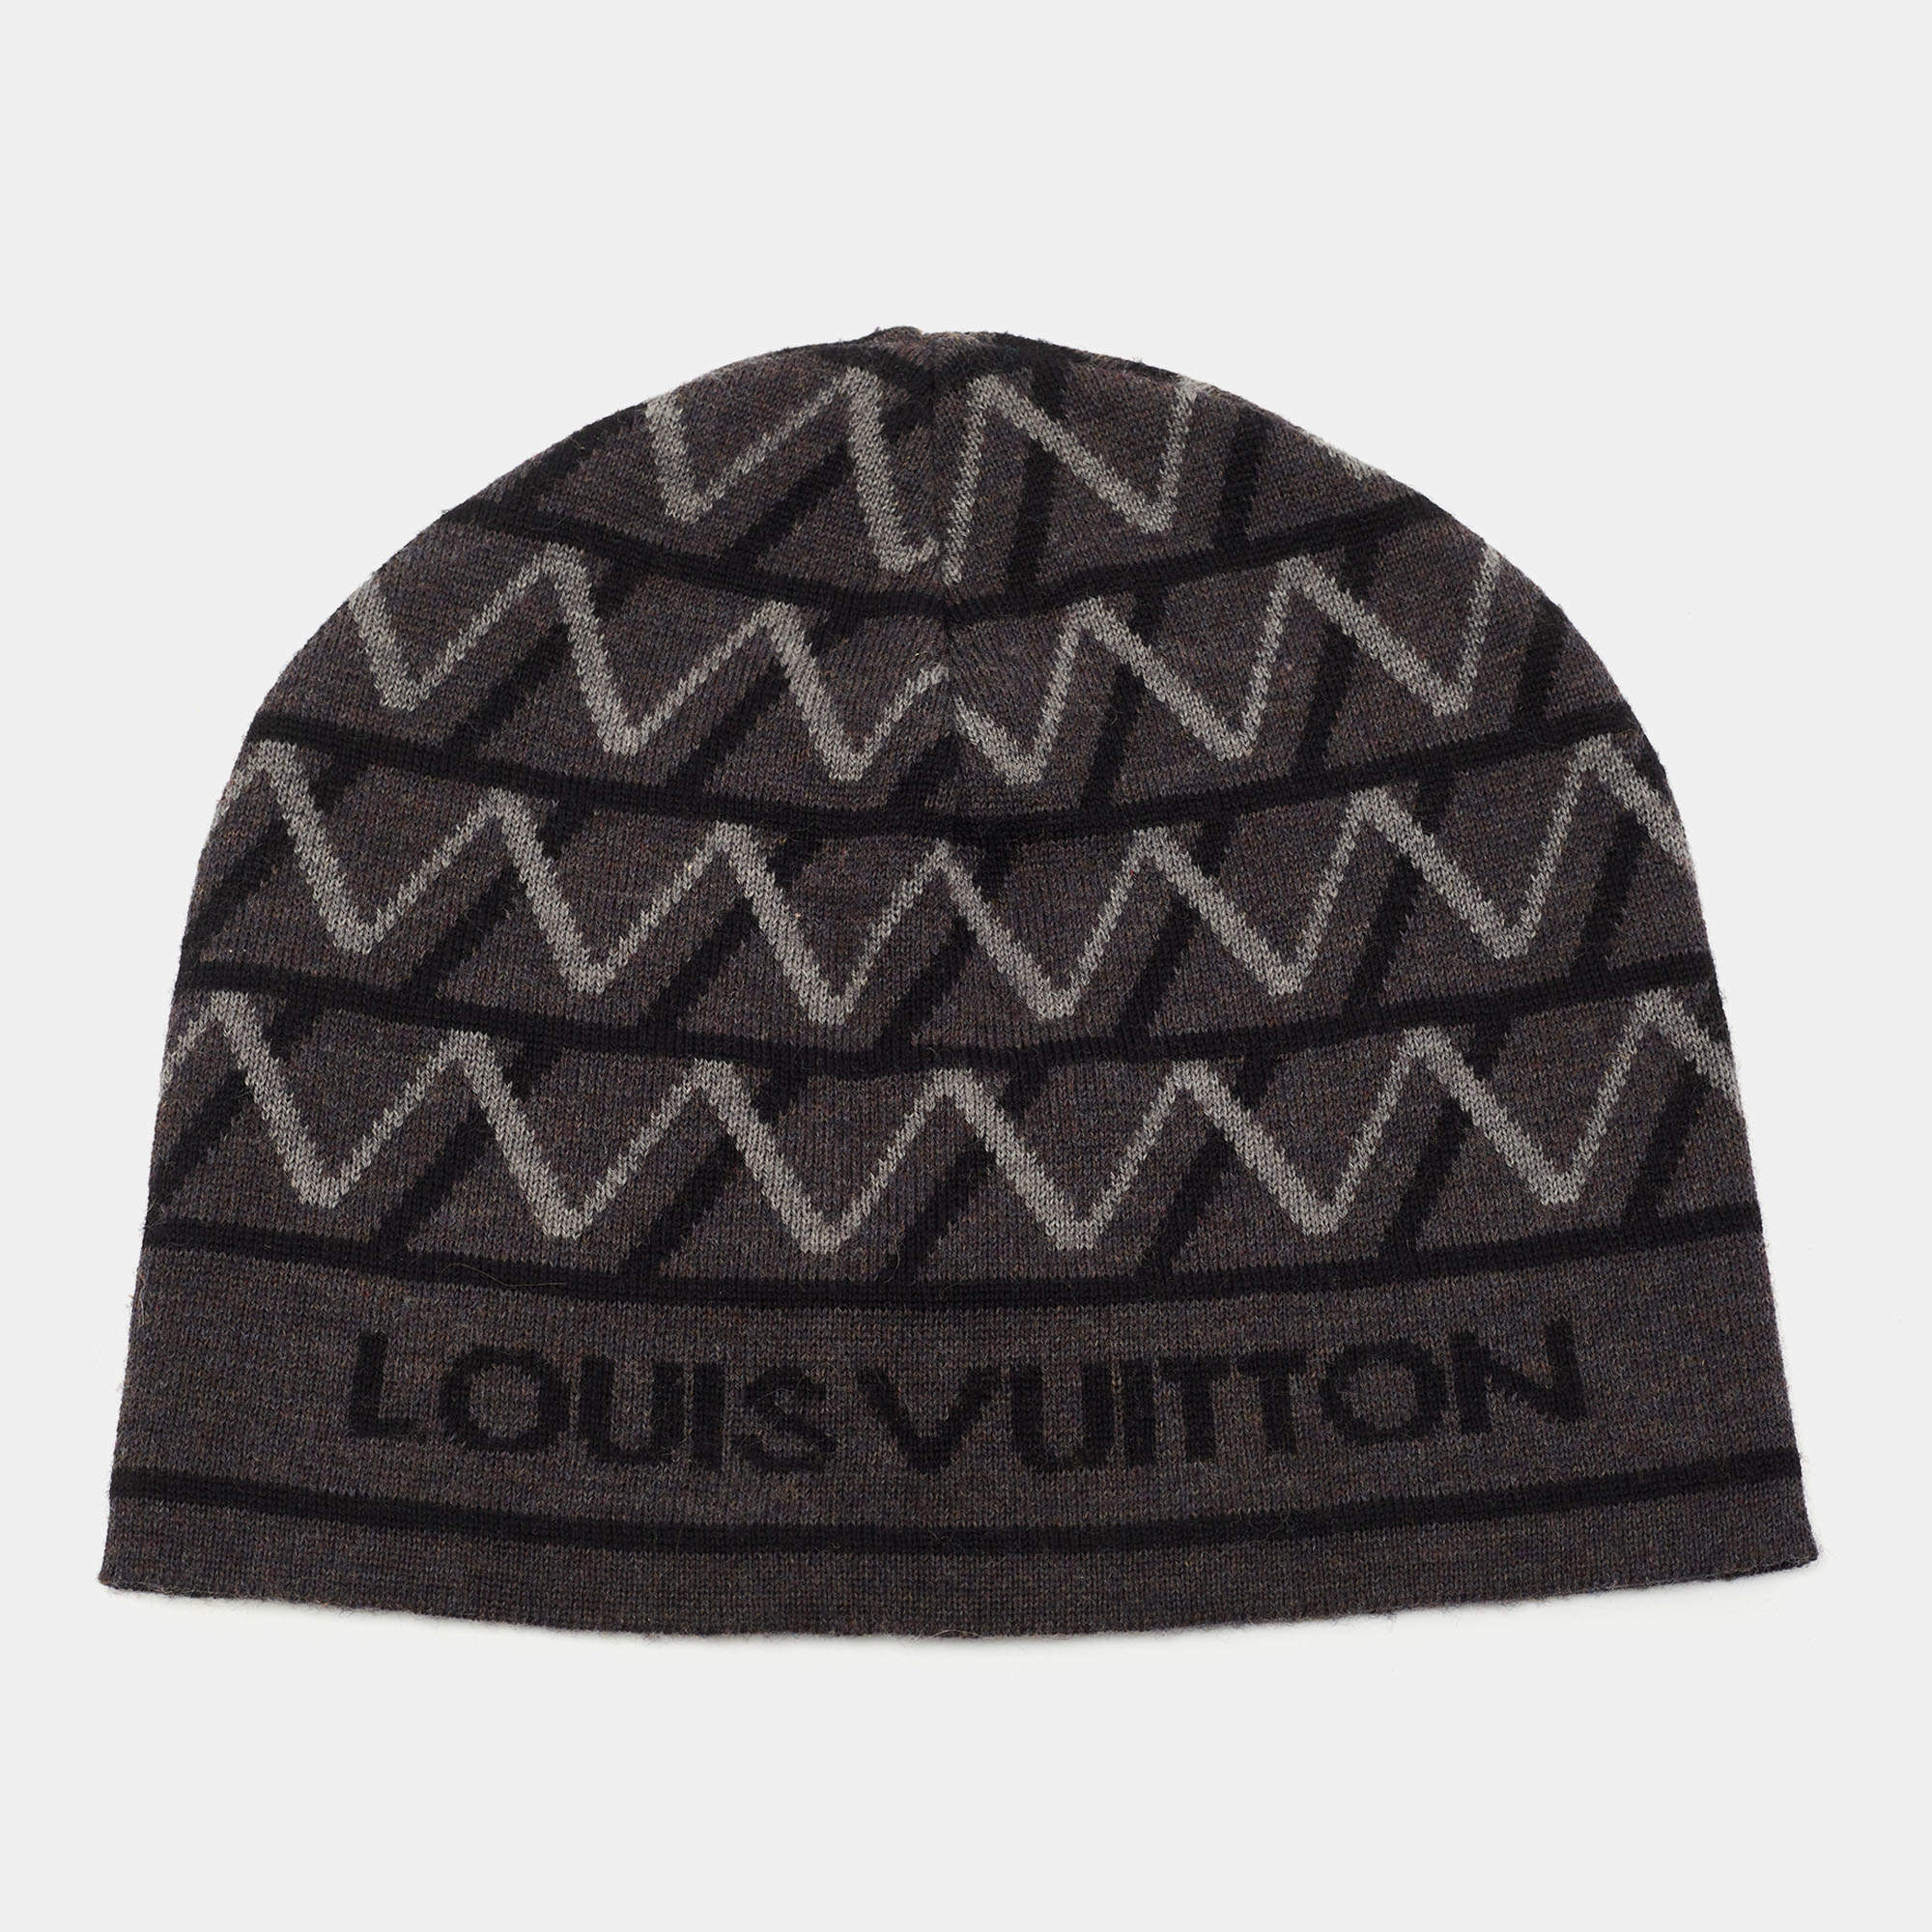 Louis Vuitton, Accessories, Authentic Louis Vuitton Knit Beanie